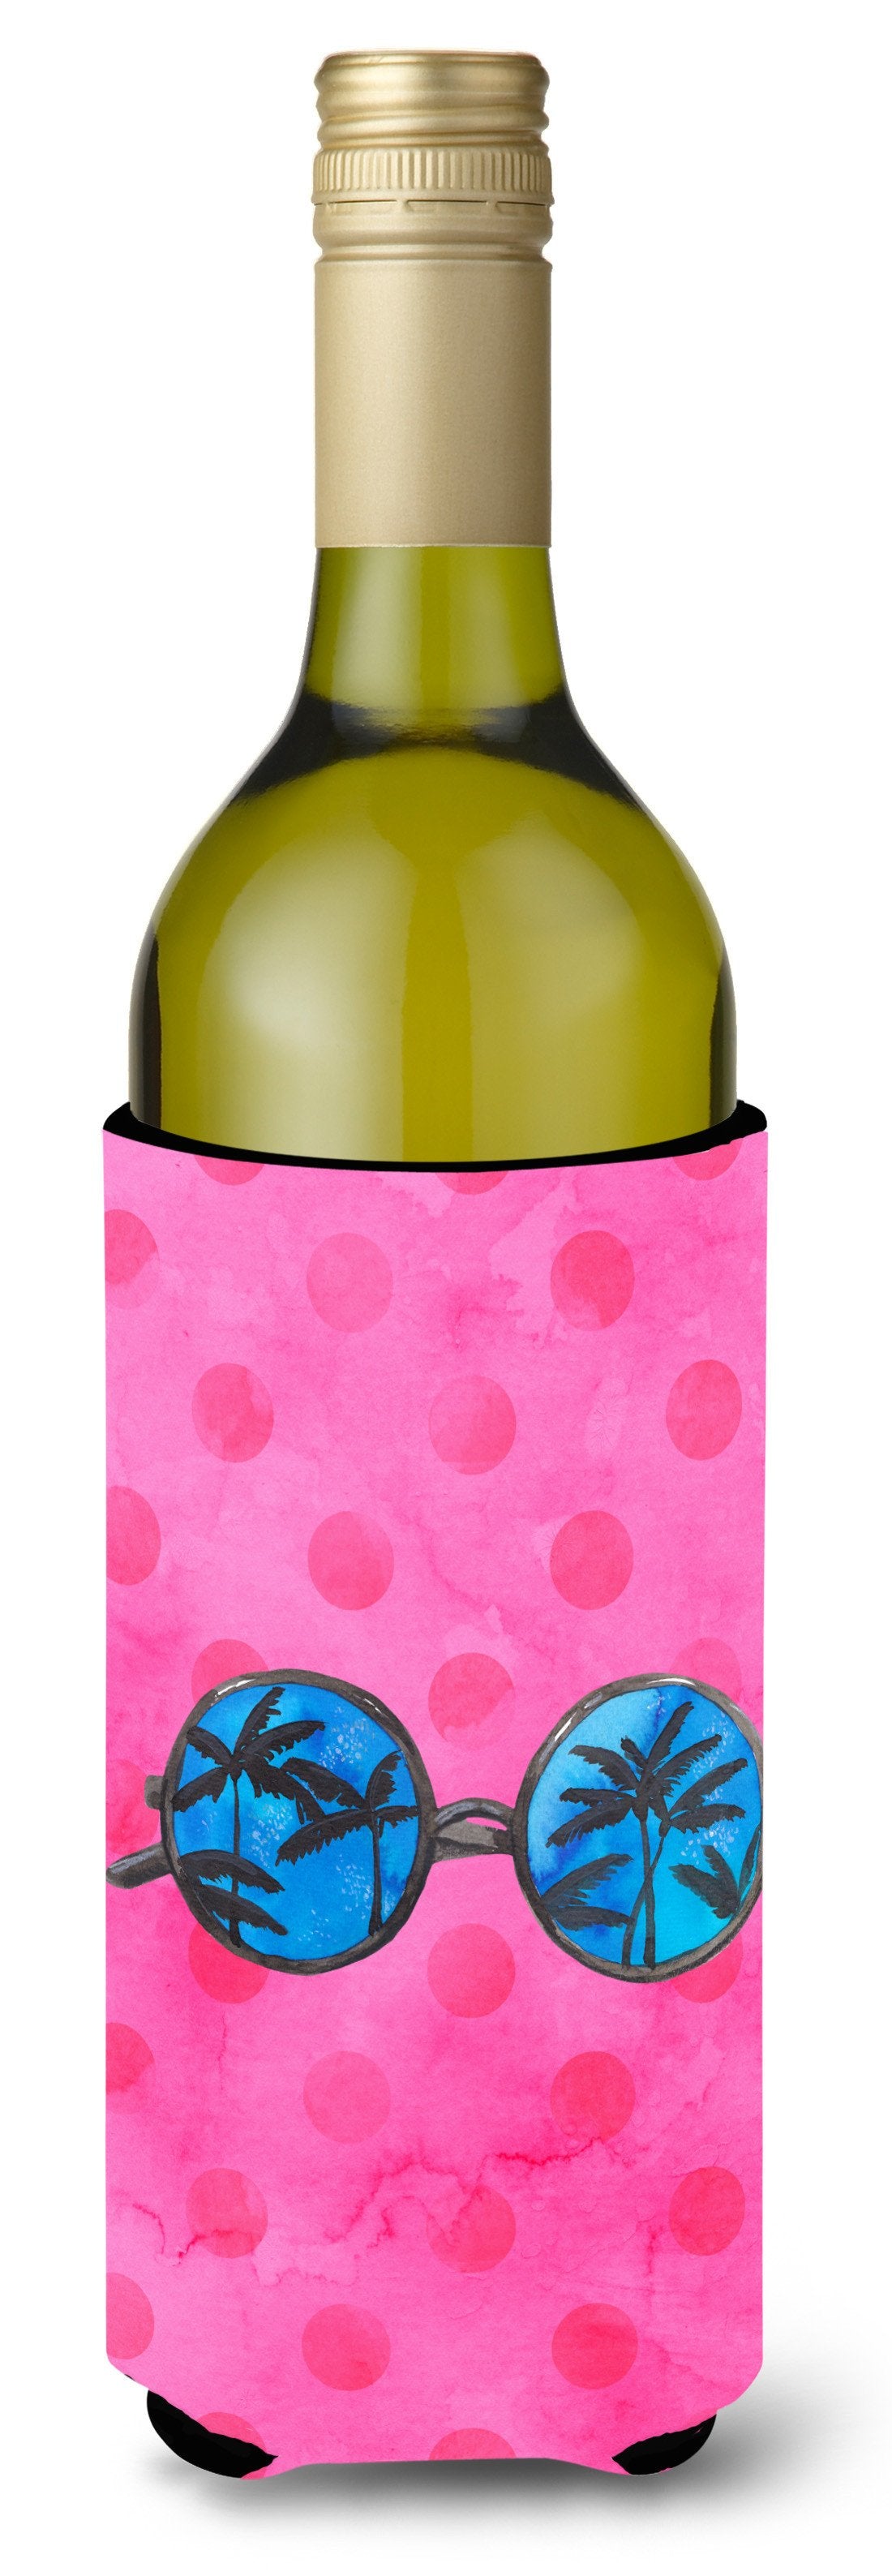 Sunglasses Pink Polkadot Wine Bottle Beverge Insulator Hugger BB8179LITERK by Caroline's Treasures